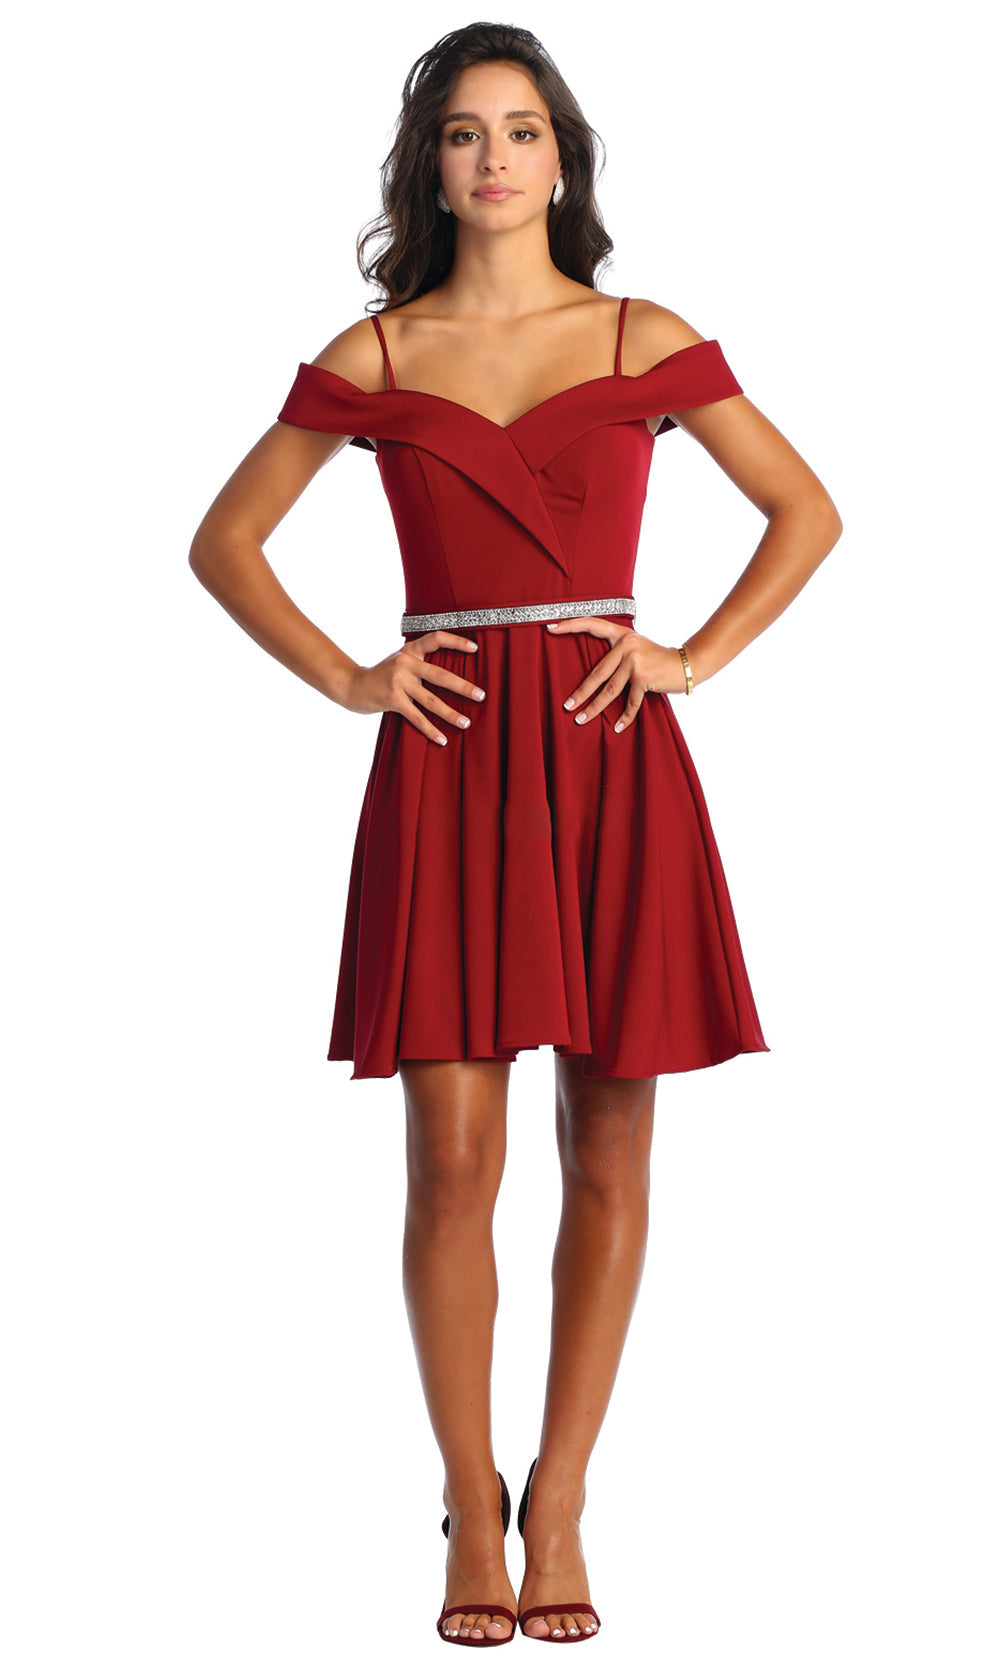 May Queen MQ1916 Redgrade 8 grad dresses, graduation dresses